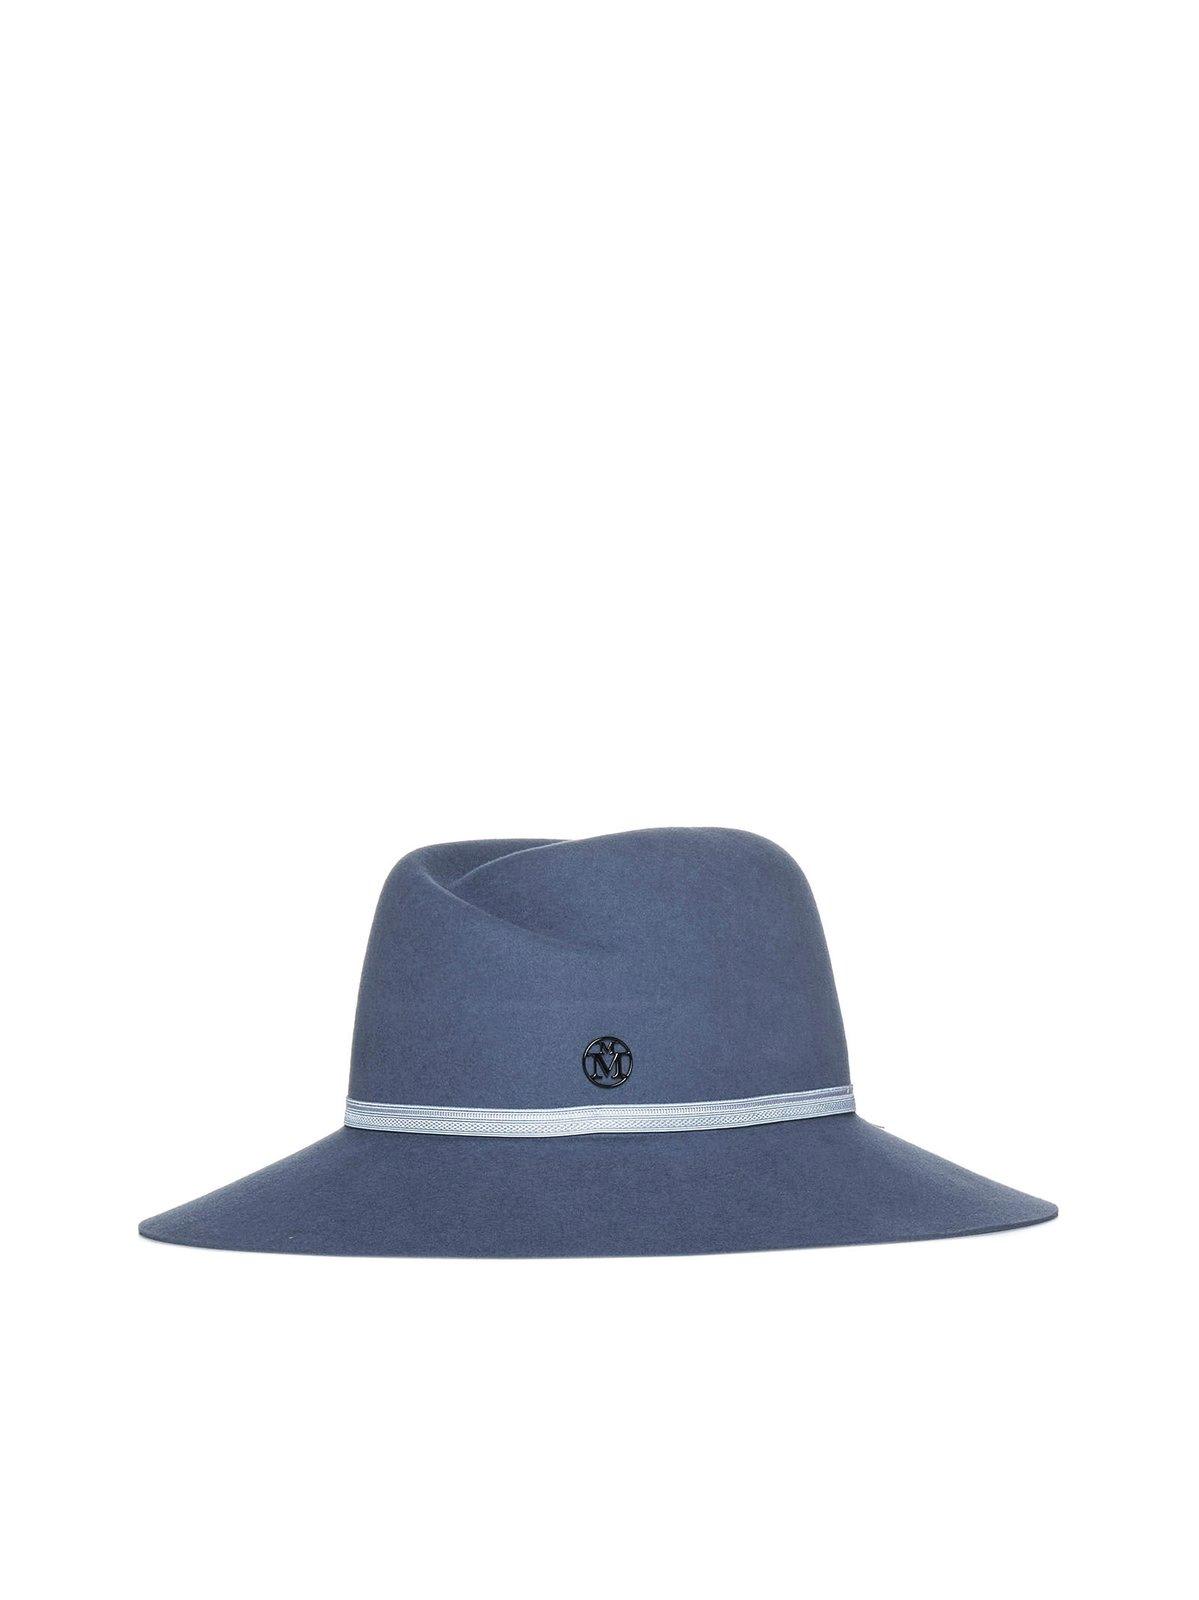 Maison Michel Logo Plaque Hat